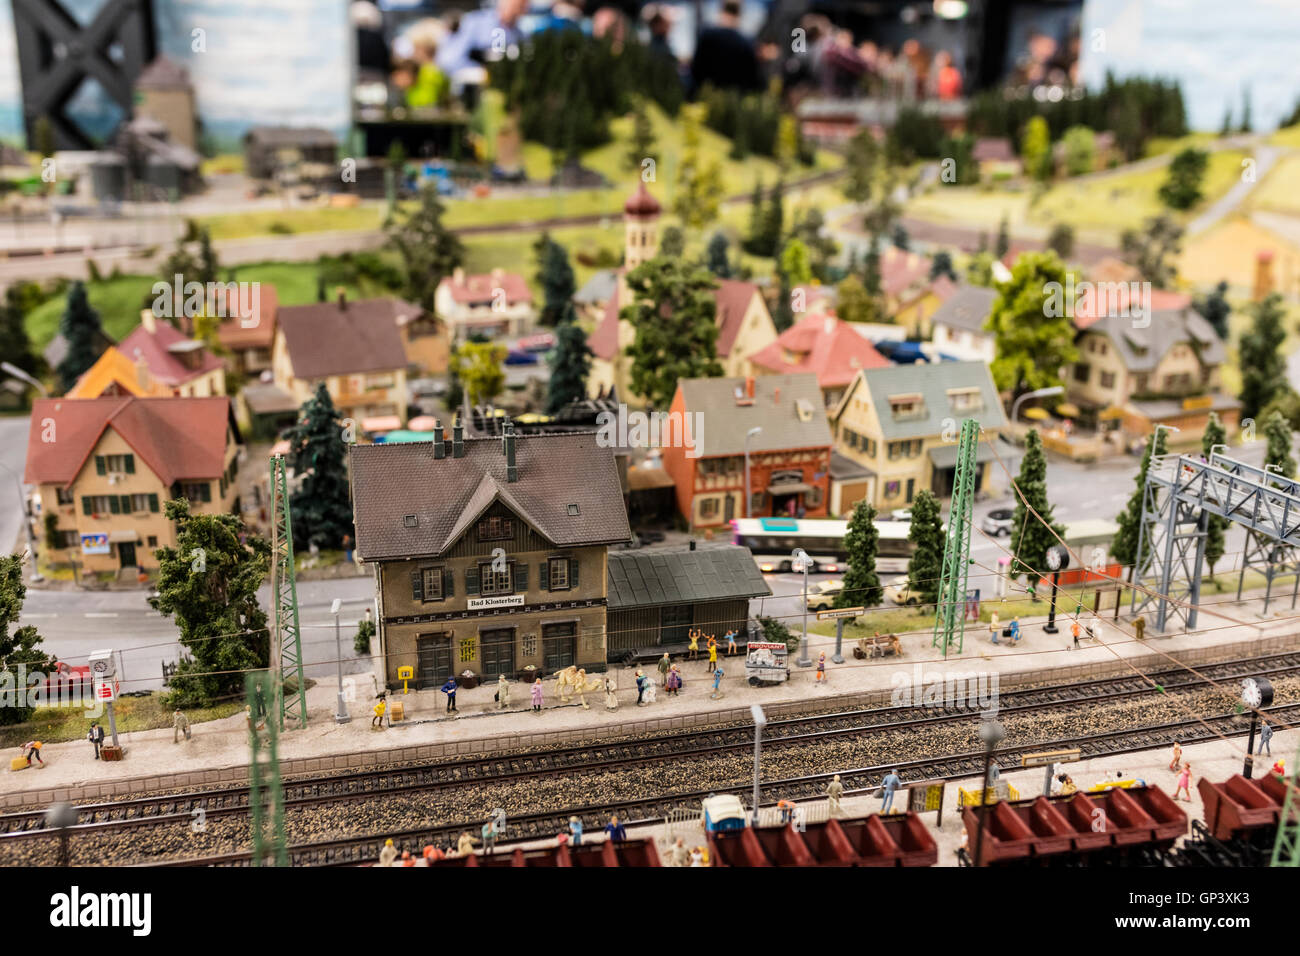 Ein Besuch im Miniatur Wunderland die größte Modelleisenbahn der Welt Hamburg Deutschland Nordeuropa Stockfoto